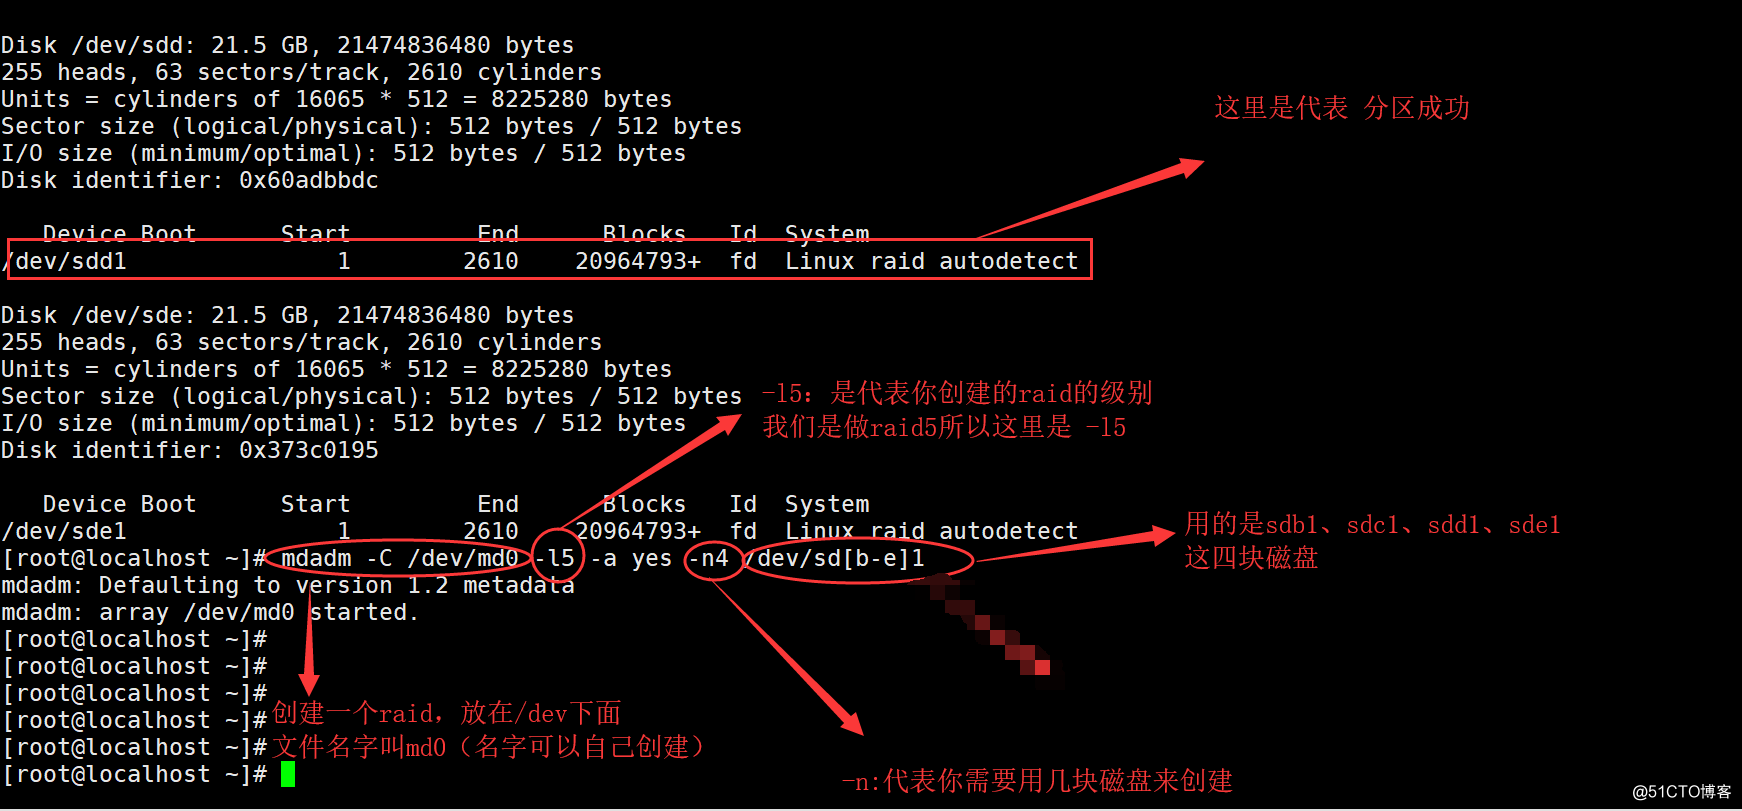 RedHat 6.5中建立Raid5卷（軟件磁盤陣列）  ；並且對Raid5卷做磁盤配額